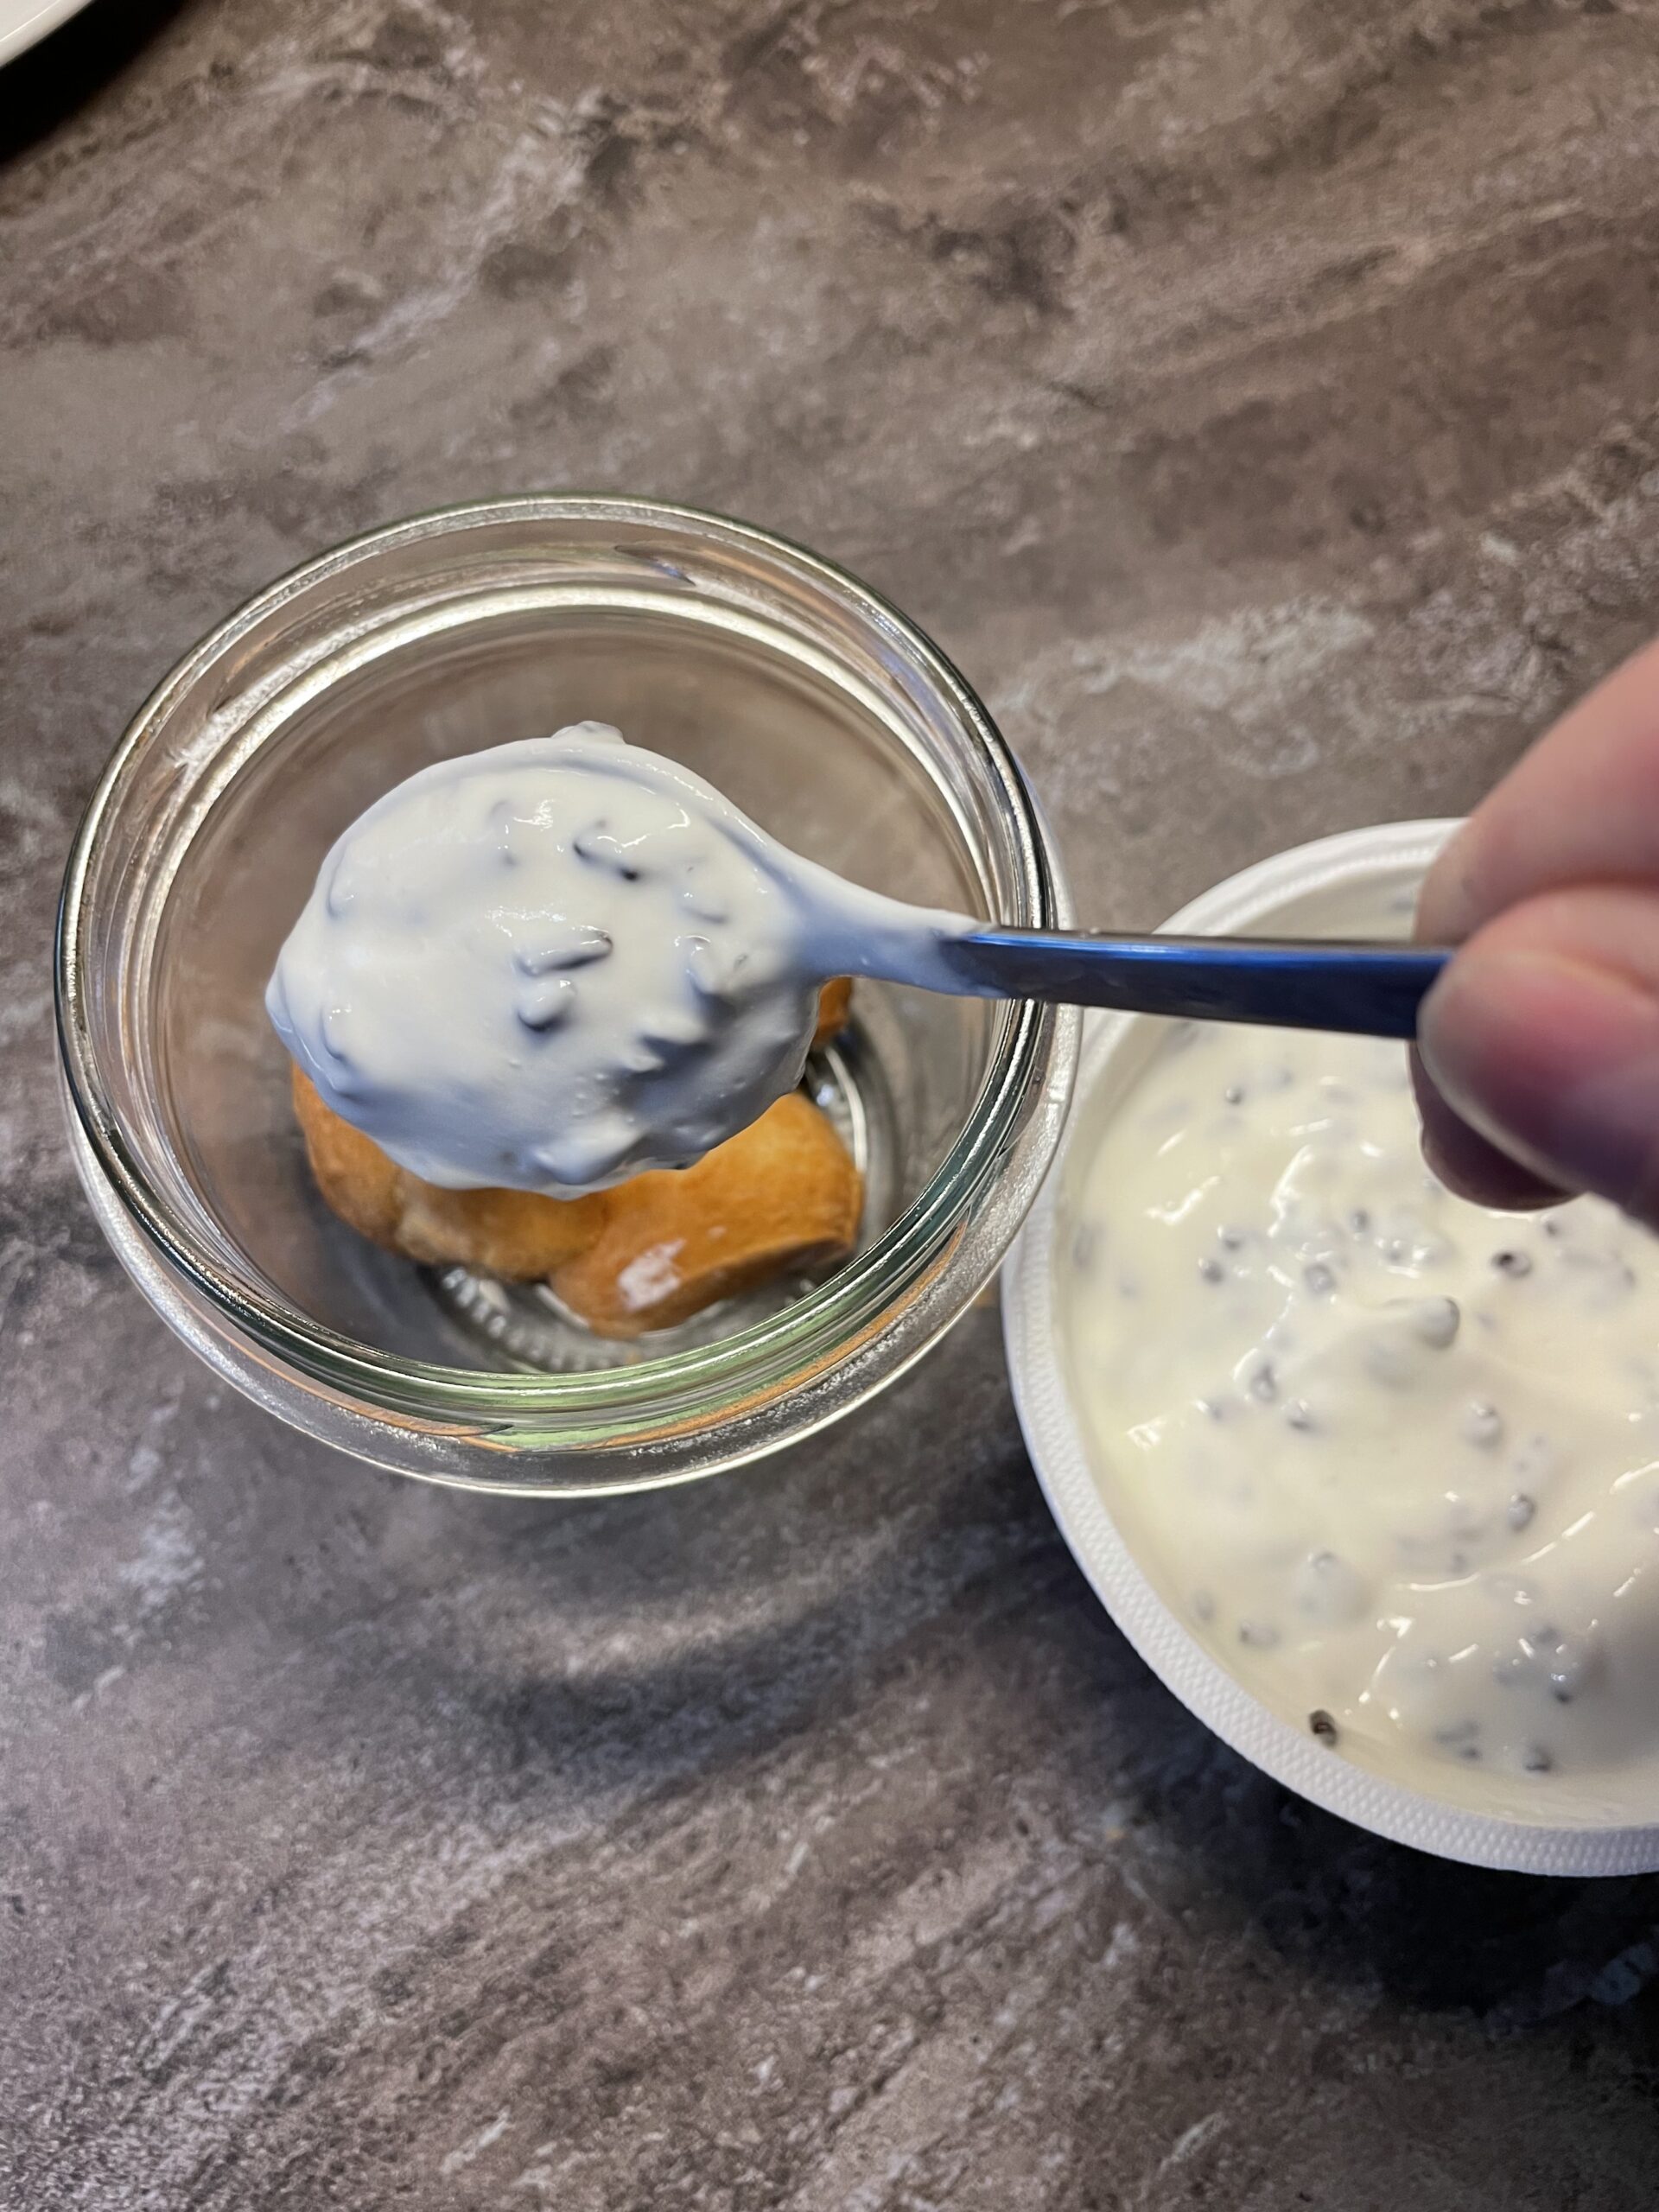 Bild zum Schritt 16 für das Bastel- und DIY-Abenteuer für Kinder: 'Nun füllt ihr einige Teelöffel Joghurt  in das Marmeladenglas...'